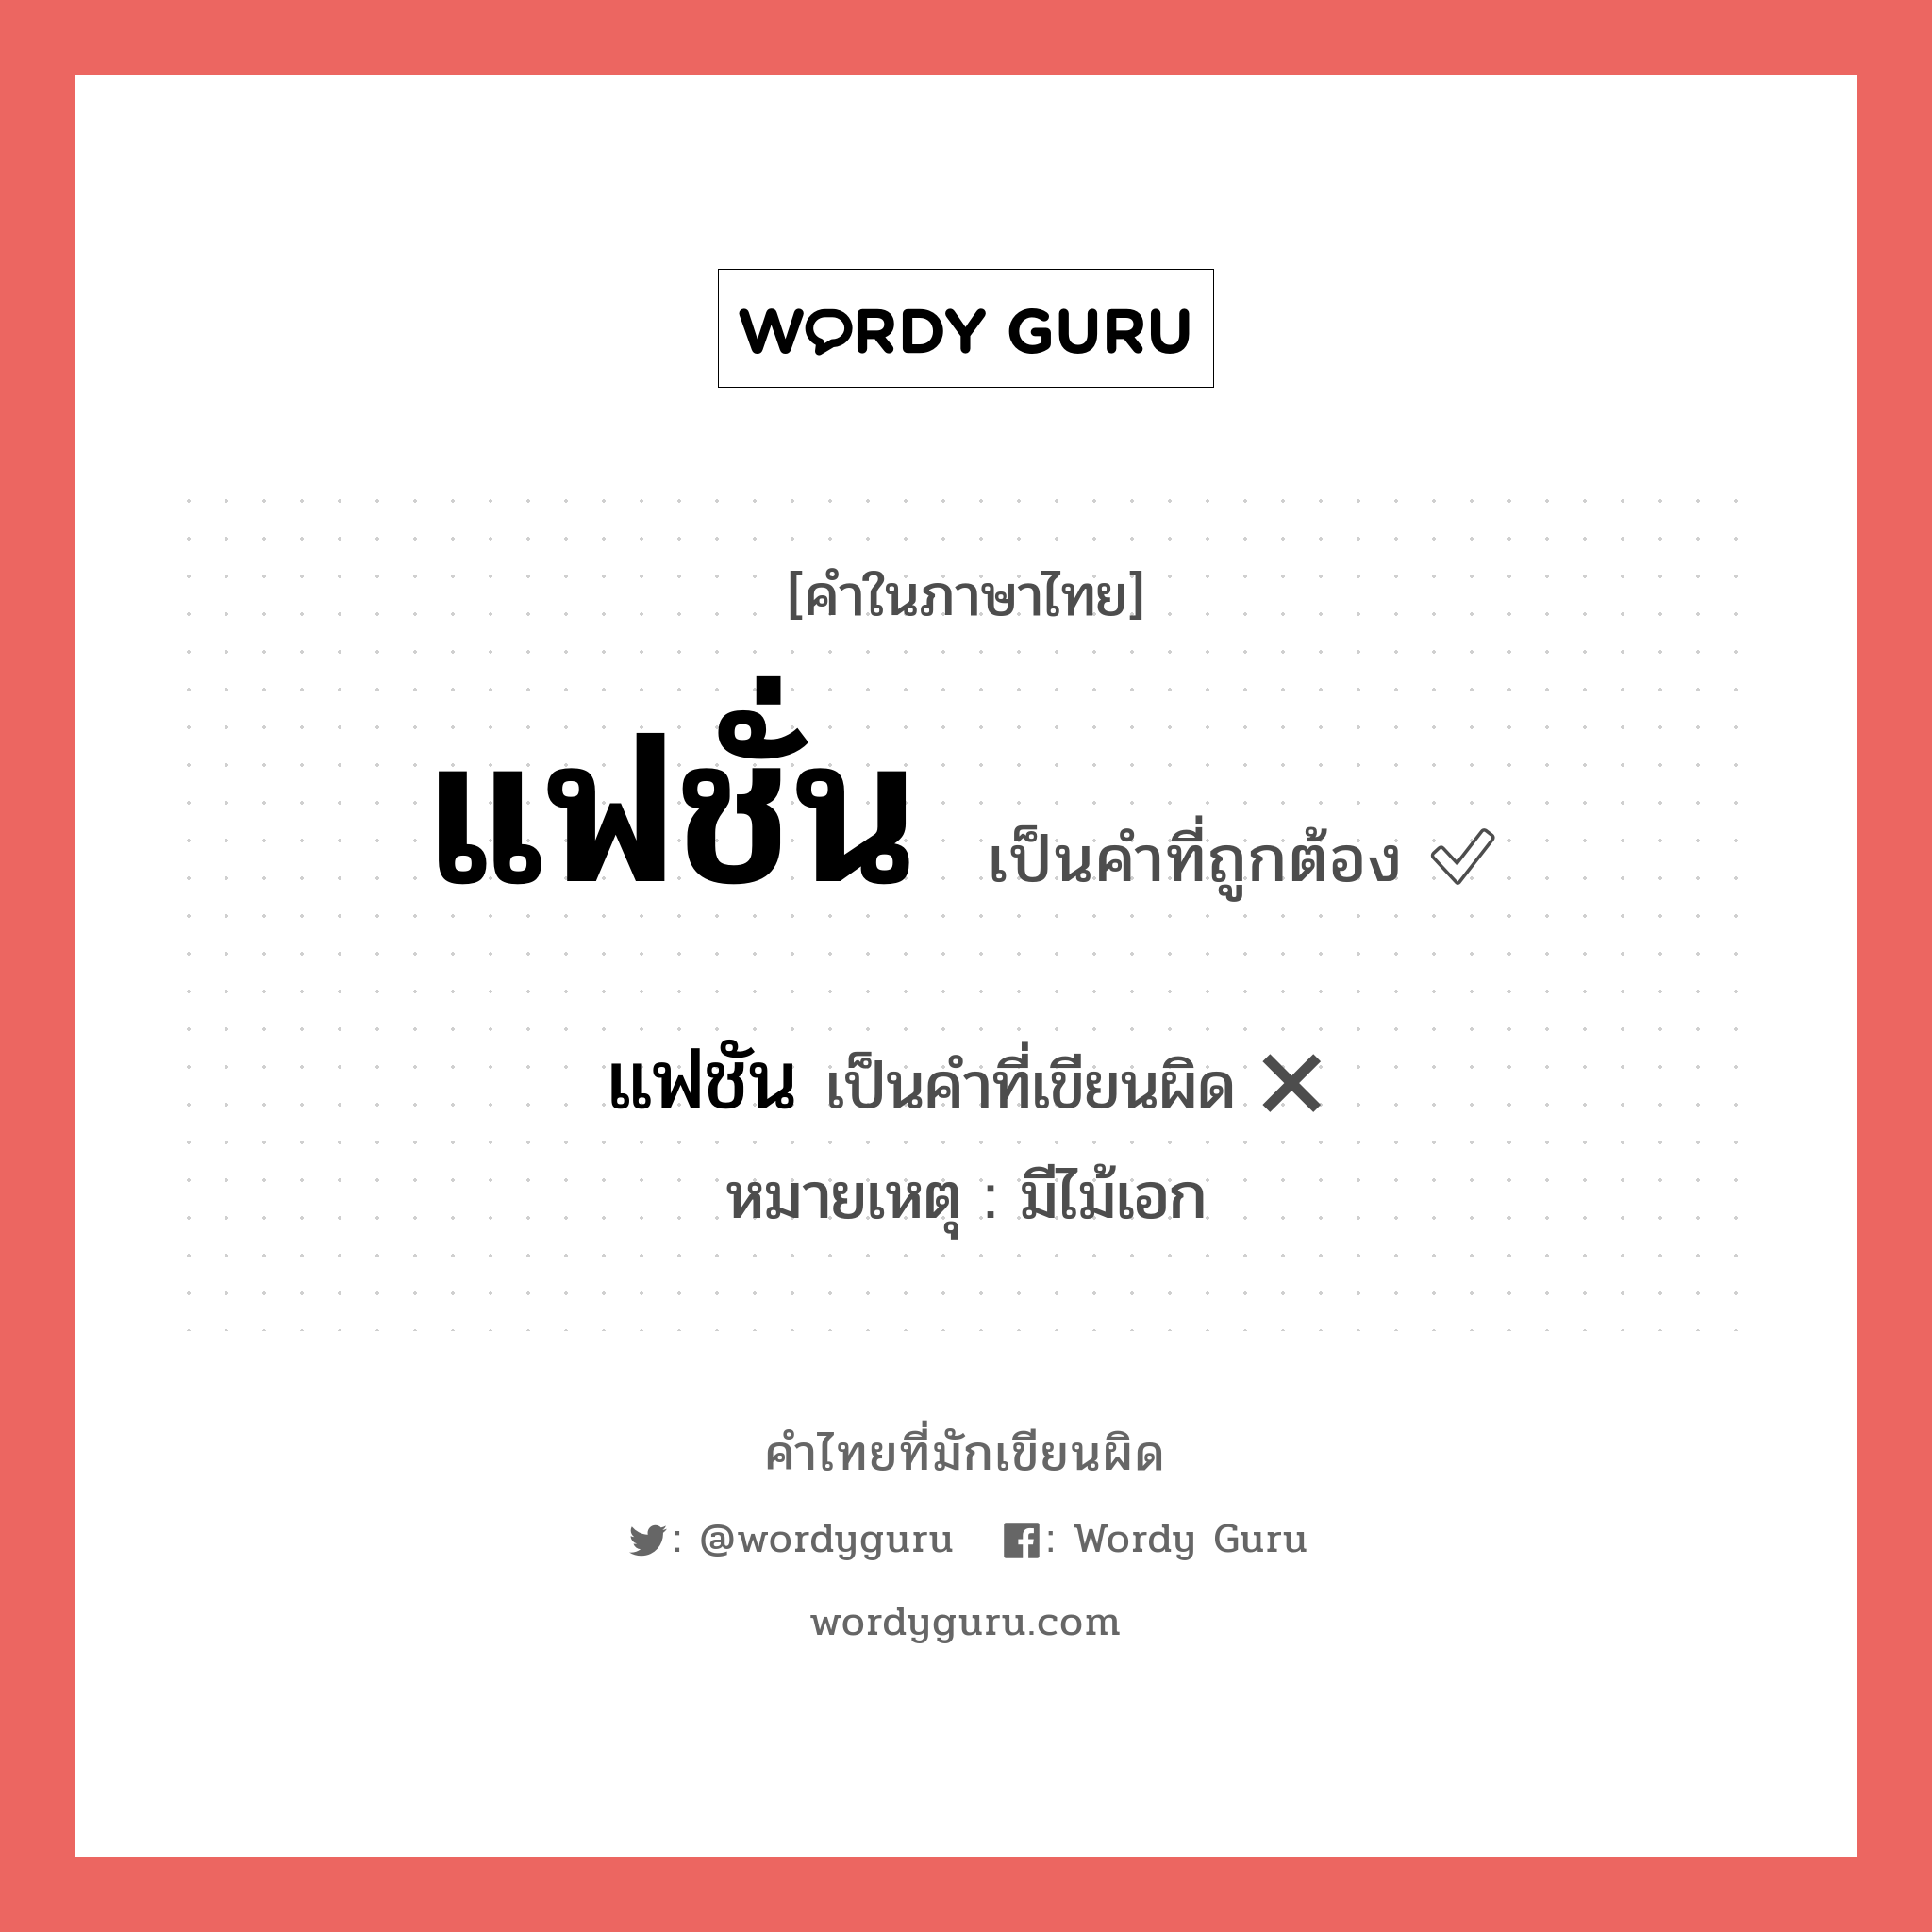 แฟชัน หรือ แฟชั่น คำไหนเขียนถูก?, คำในภาษาไทยที่มักเขียนผิด แฟชัน คำที่ผิด ❌ แฟชั่น หมายเหตุ มีไม้เอก